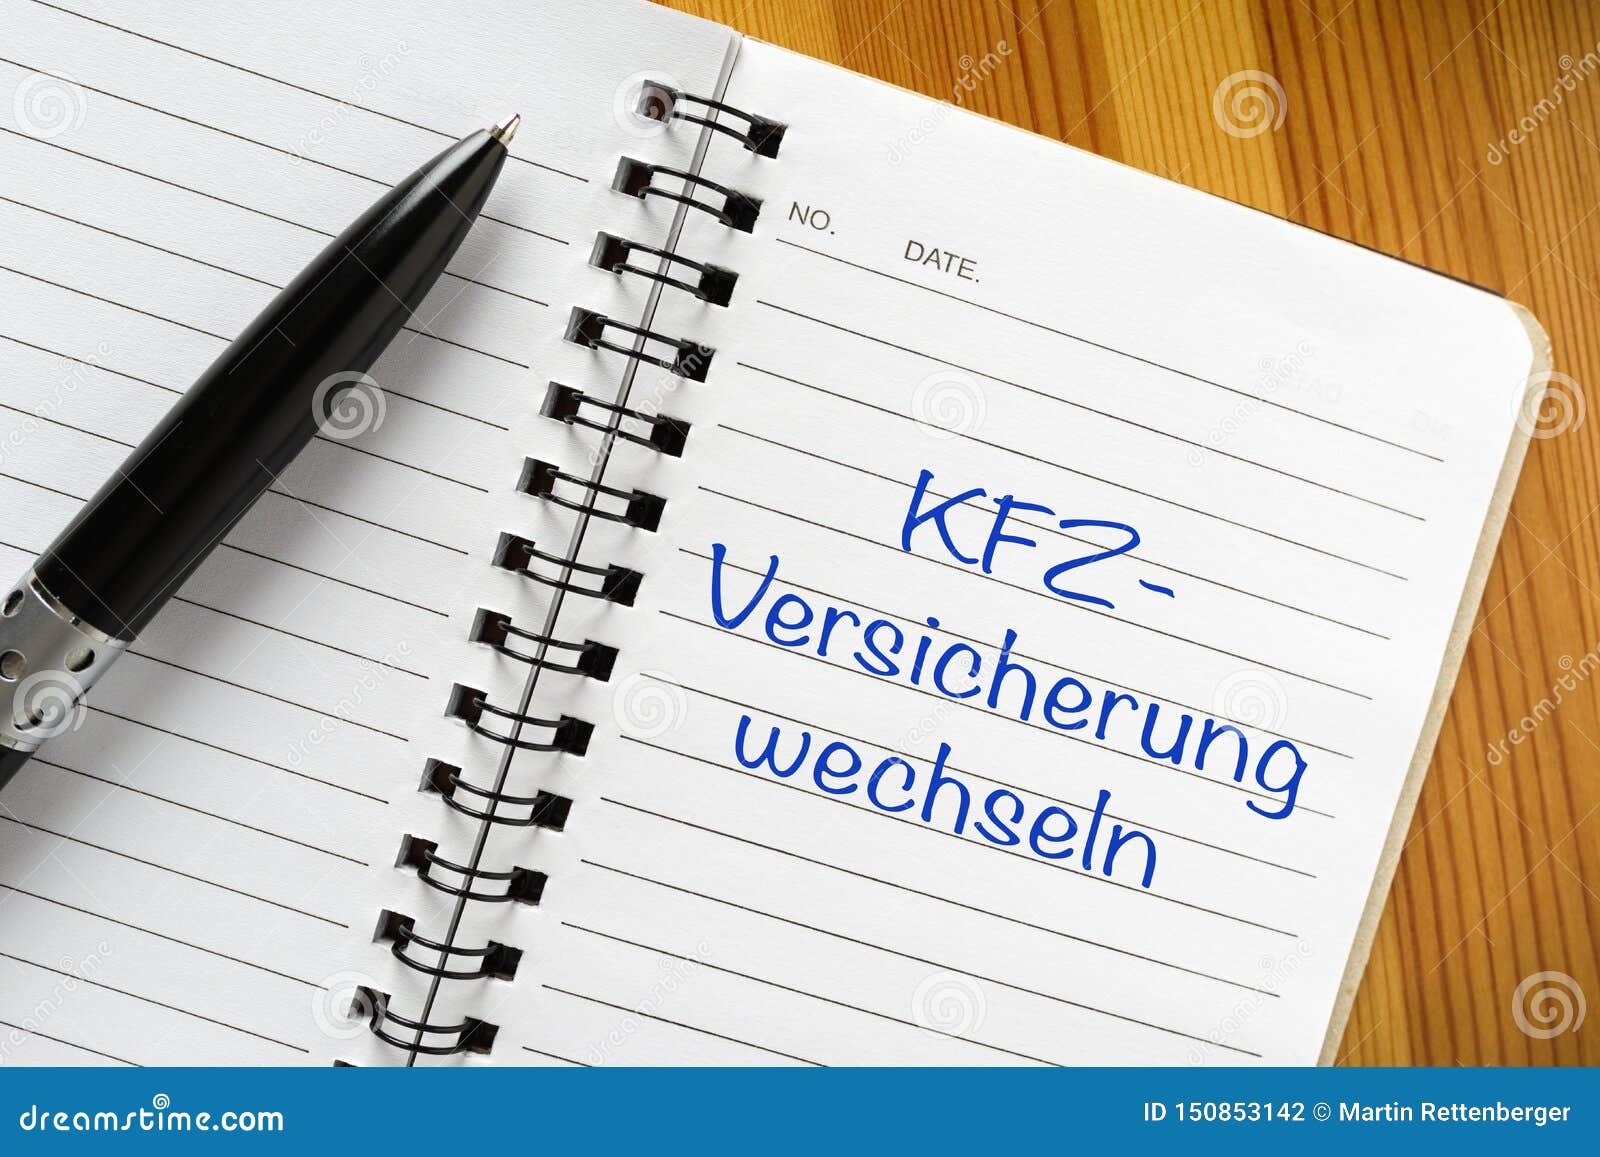 note in german language: kfz -versicherung wechseln